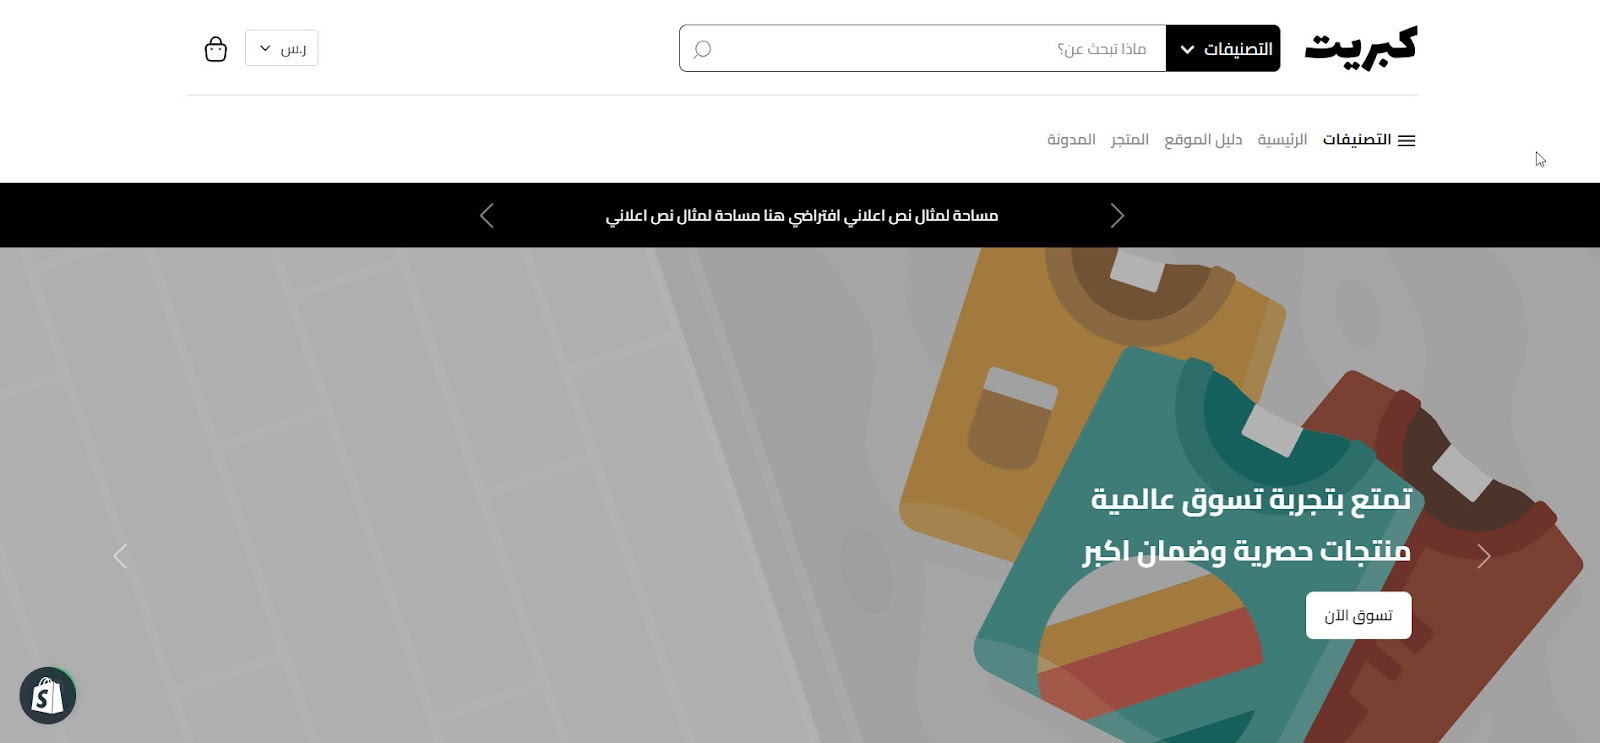 واجهة قالب كبريت العربية على منصة شوبيفاي